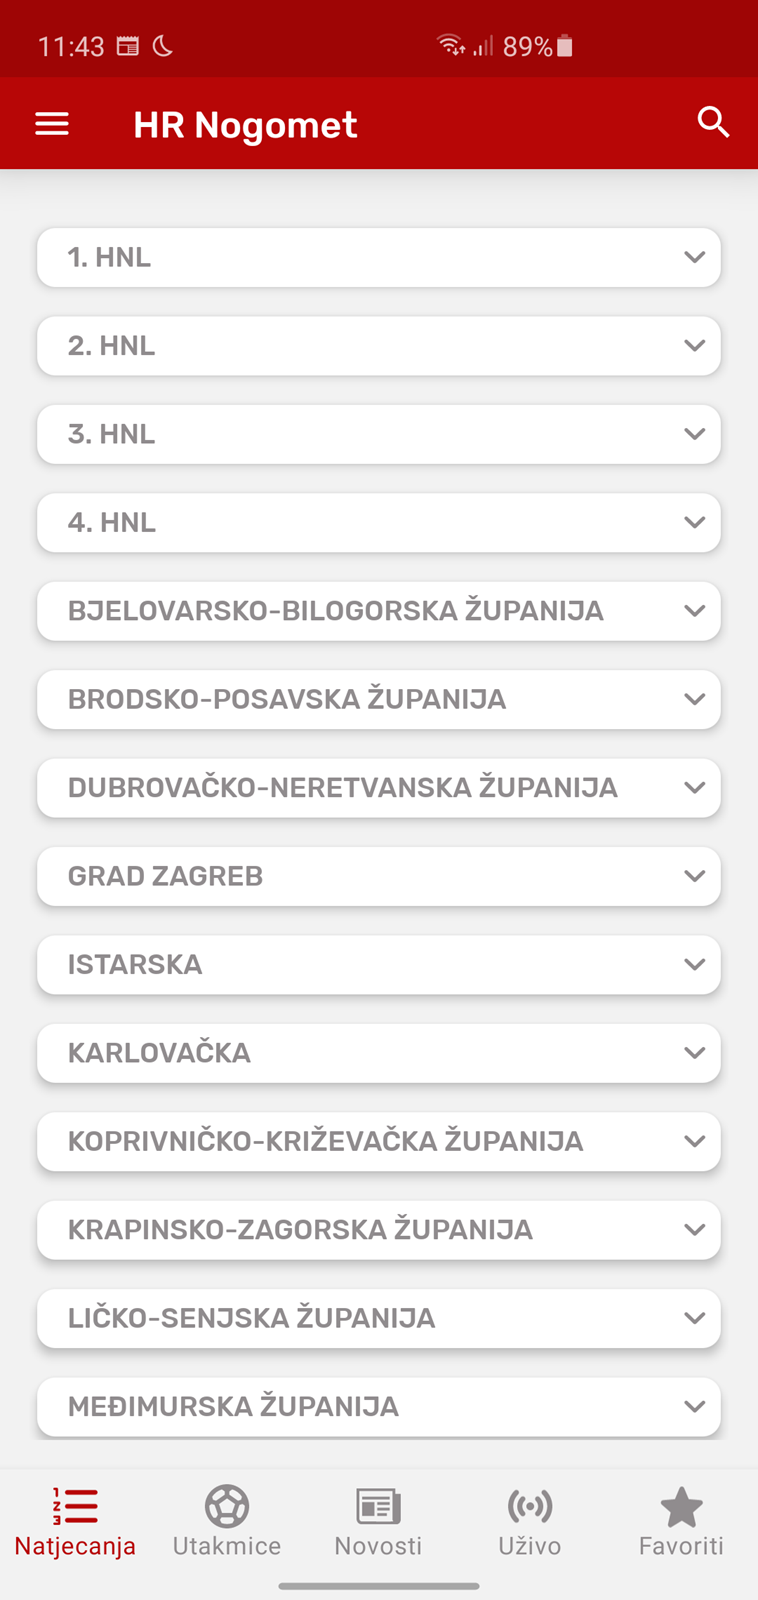 Rezultati svih nogometnih liga u Hrvatskoj na vašem mobitelu – HRnogomet -  APP DANA @ Bug.hr